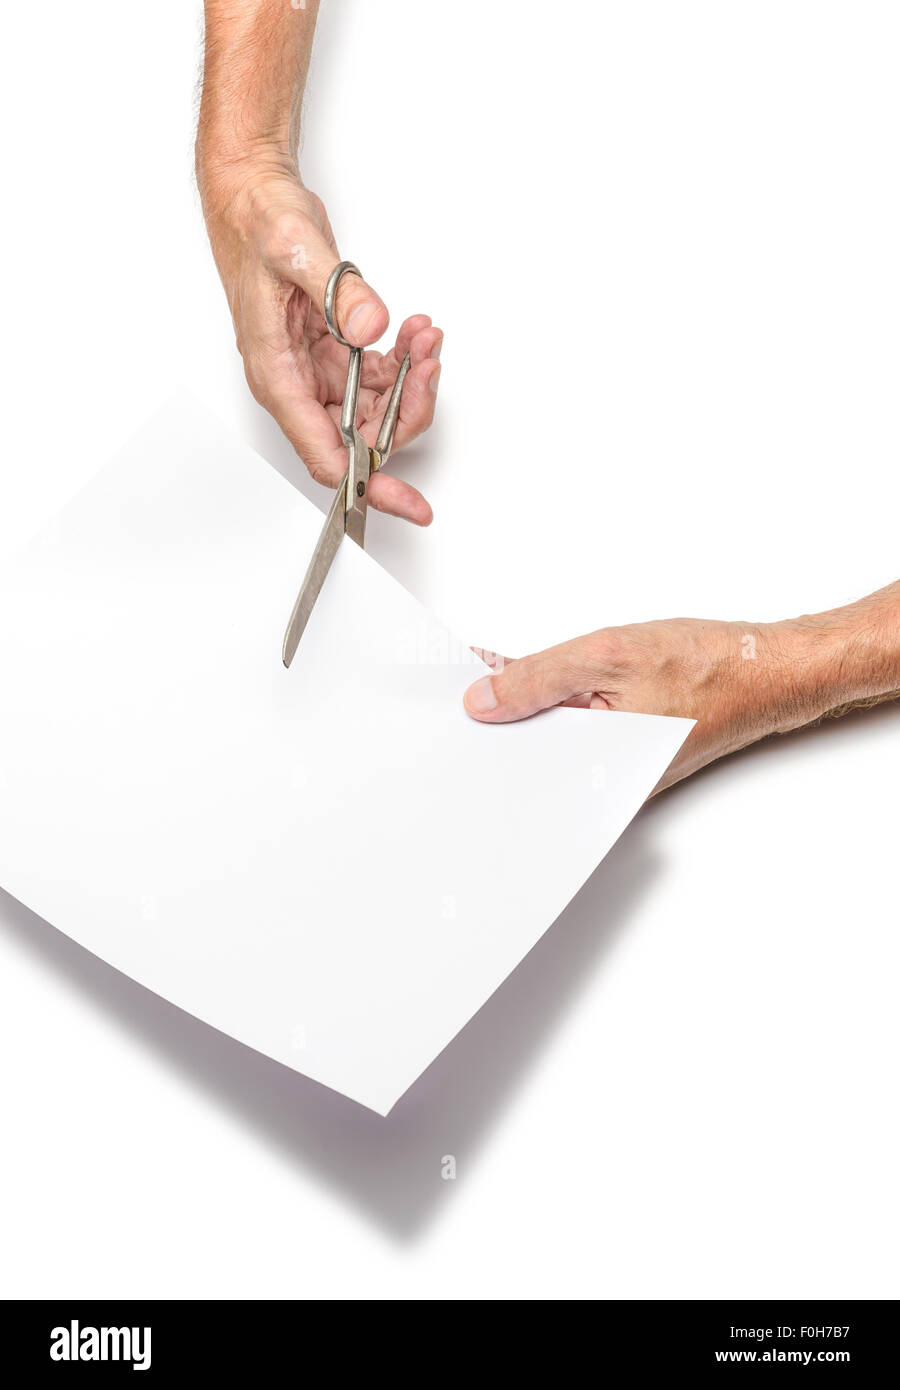 Un uomo è il taglio di un foglio di carta bianca utilizzando forbici metallico, su sfondo bianco Foto Stock